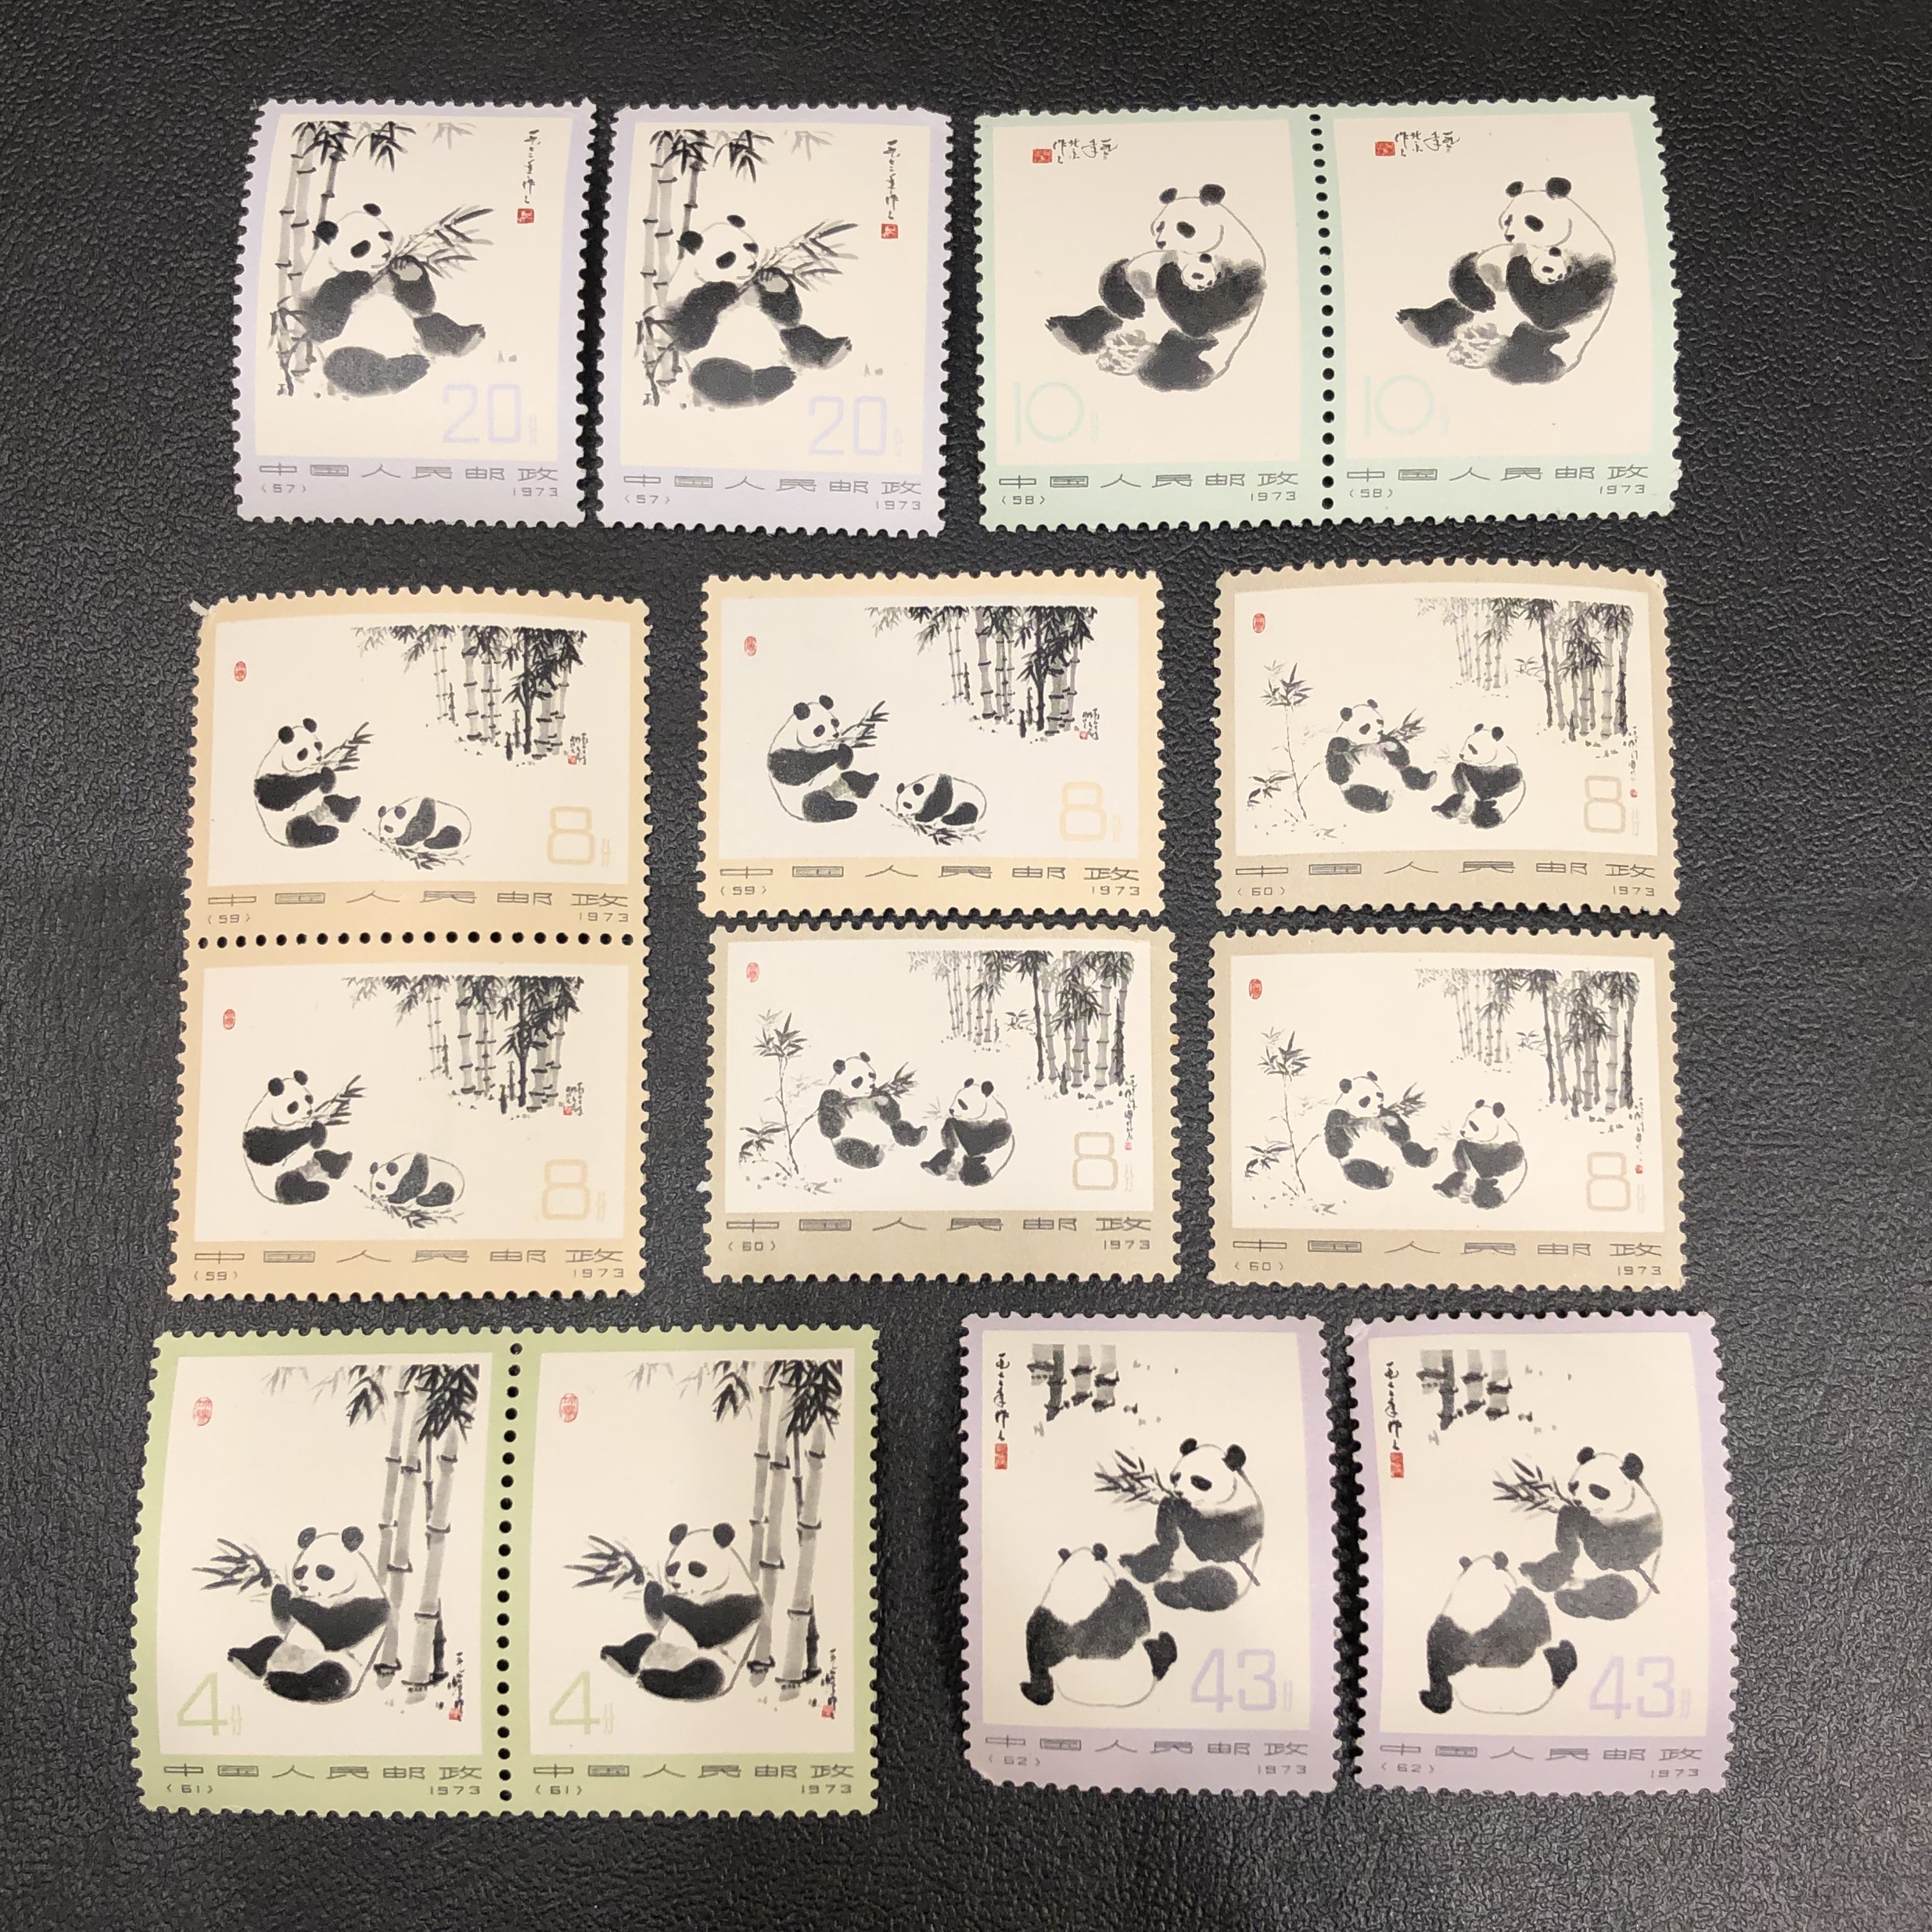 【中国切手】オオパンダ 1973年